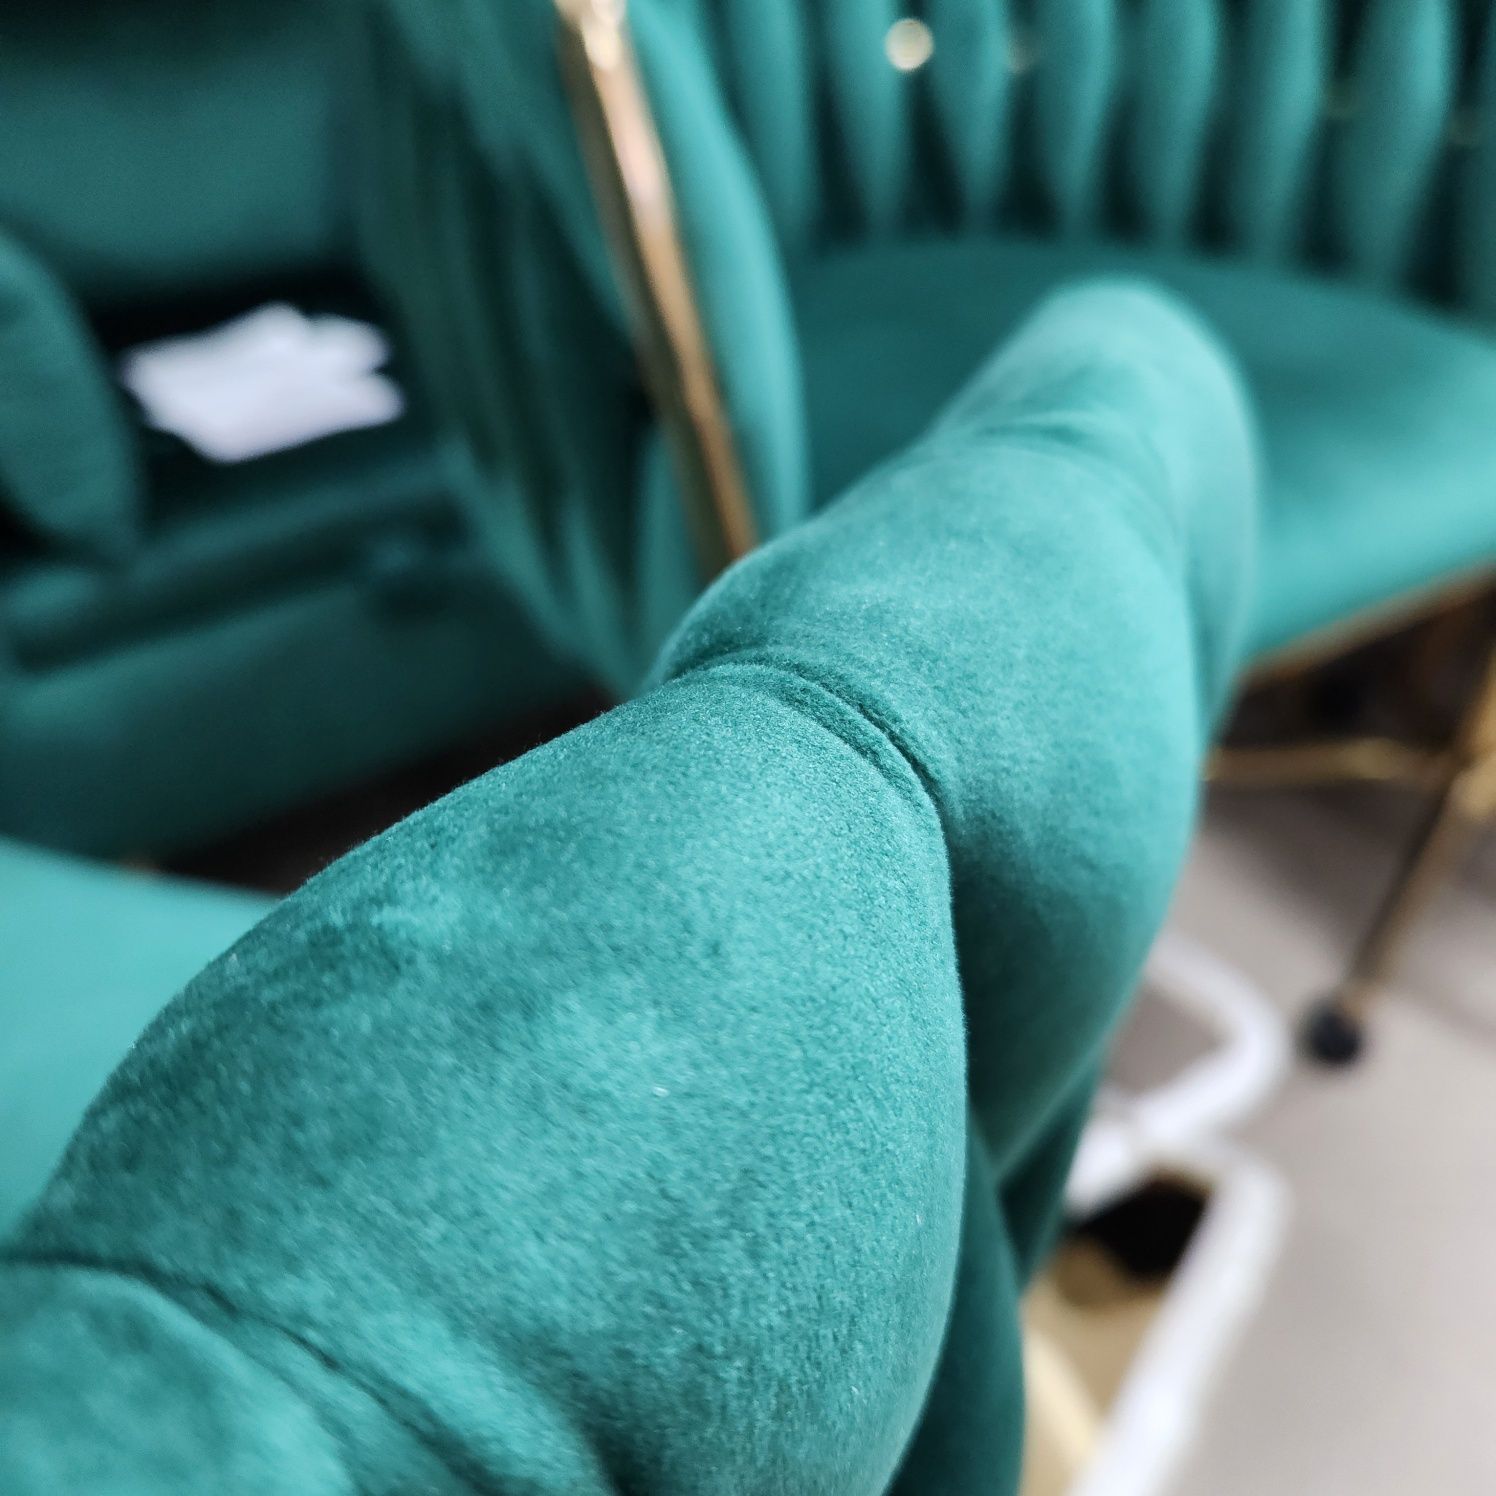 NOU Set 2 scaune bar catifea verde smaragd